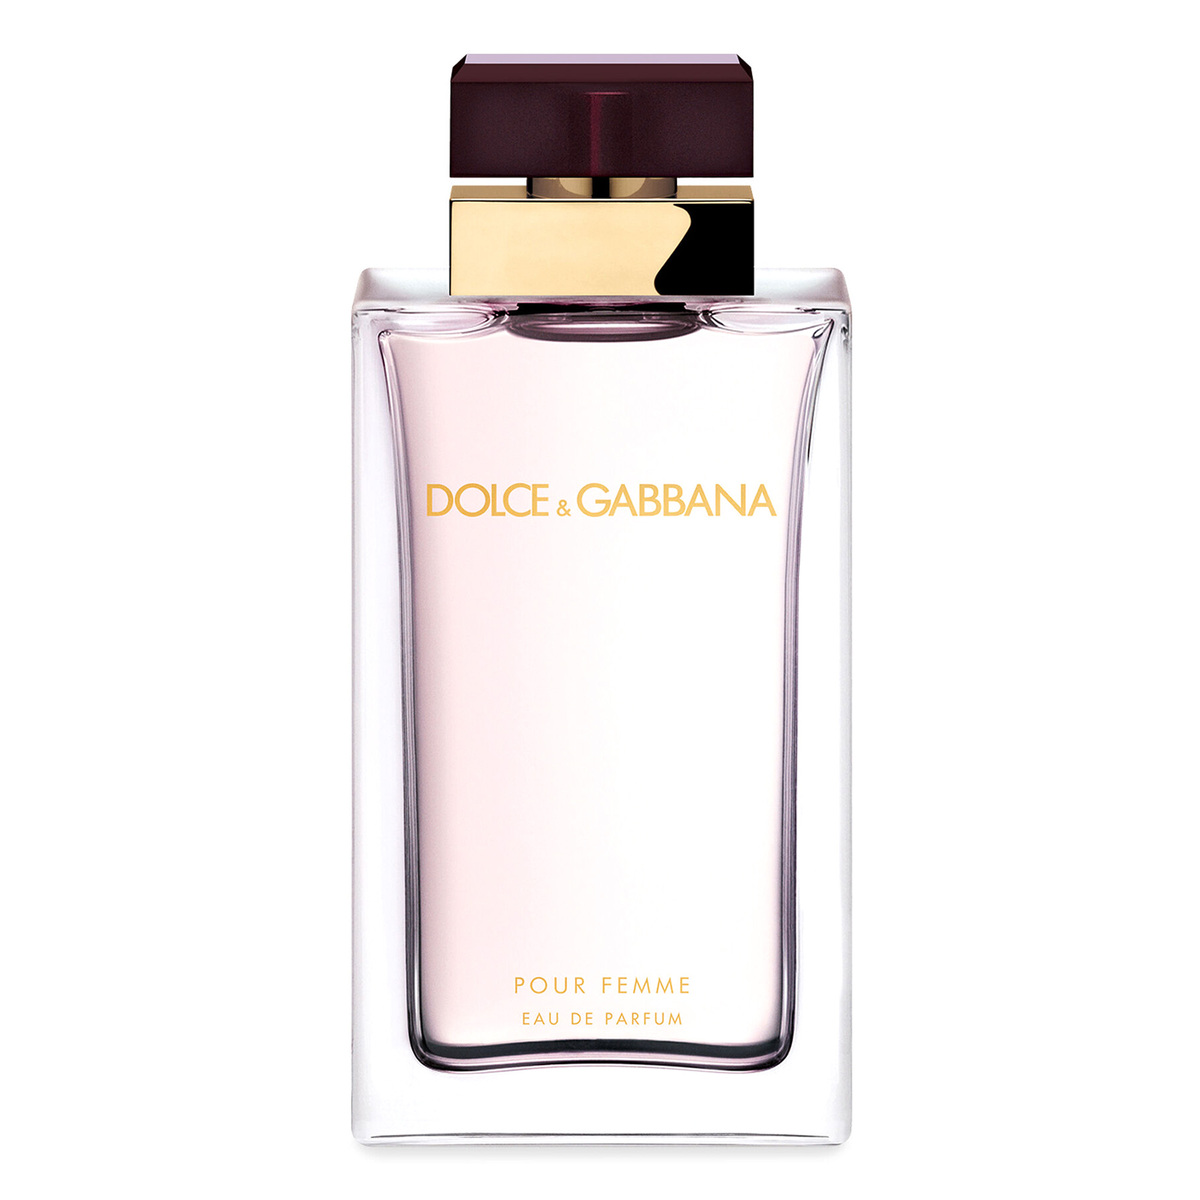 Dolce & Gabbana Pour Femme Eau de Parfum fragrance For Women, 100 ml